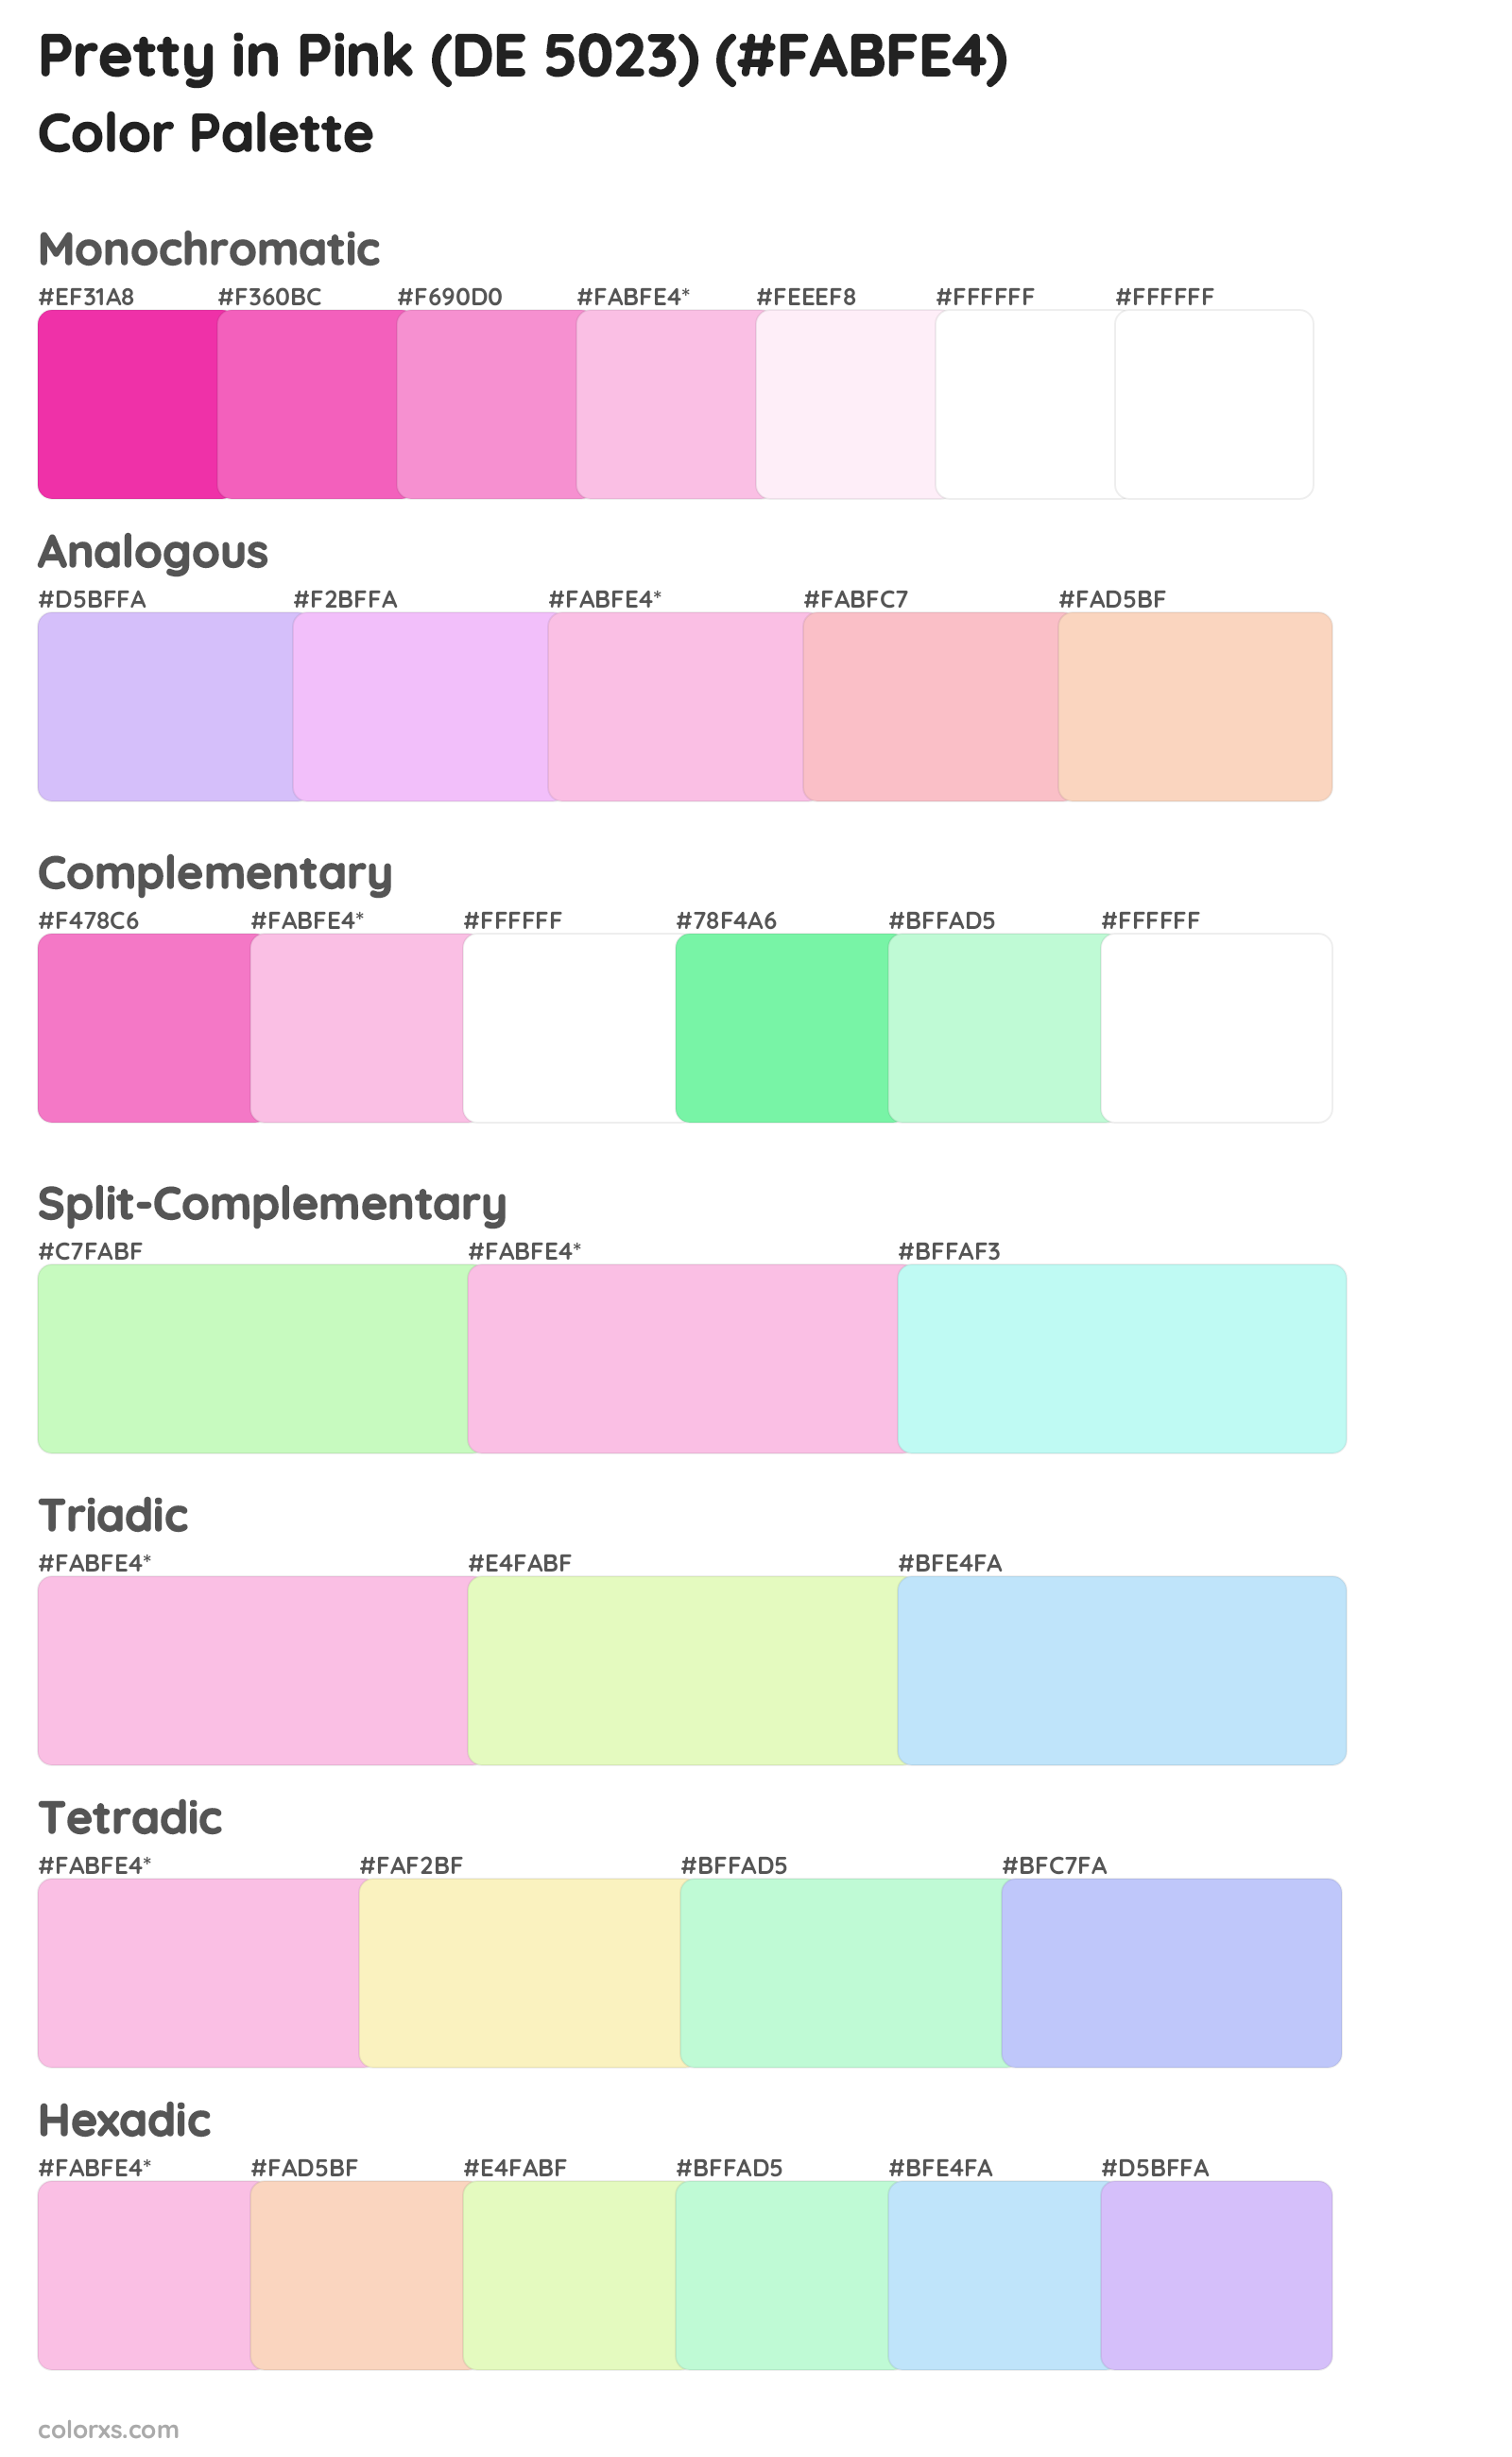 Pretty in Pink (DE 5023) Color Scheme Palettes